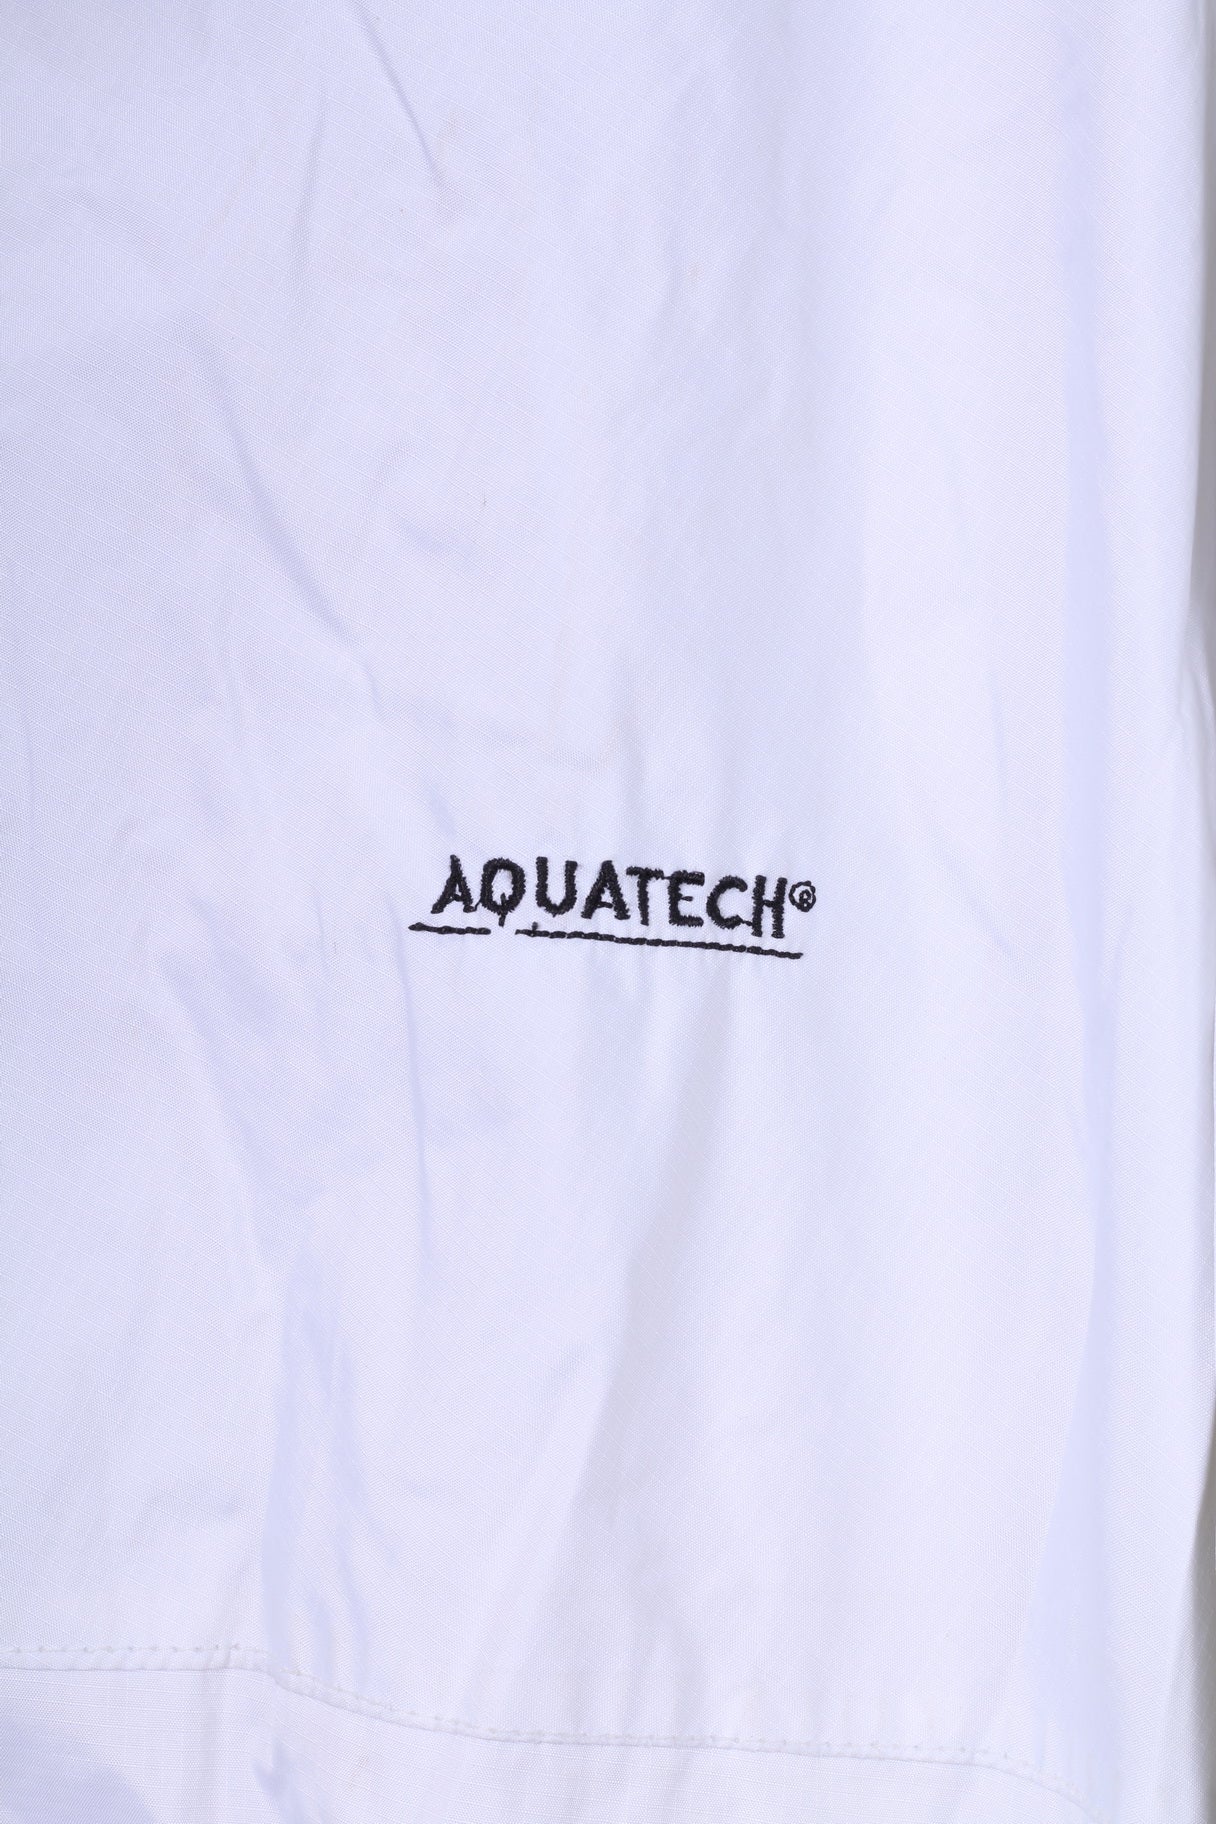 Aquatech Veste légère 2XL pour homme Blanc Fermeture éclair complète imperméable et respirante